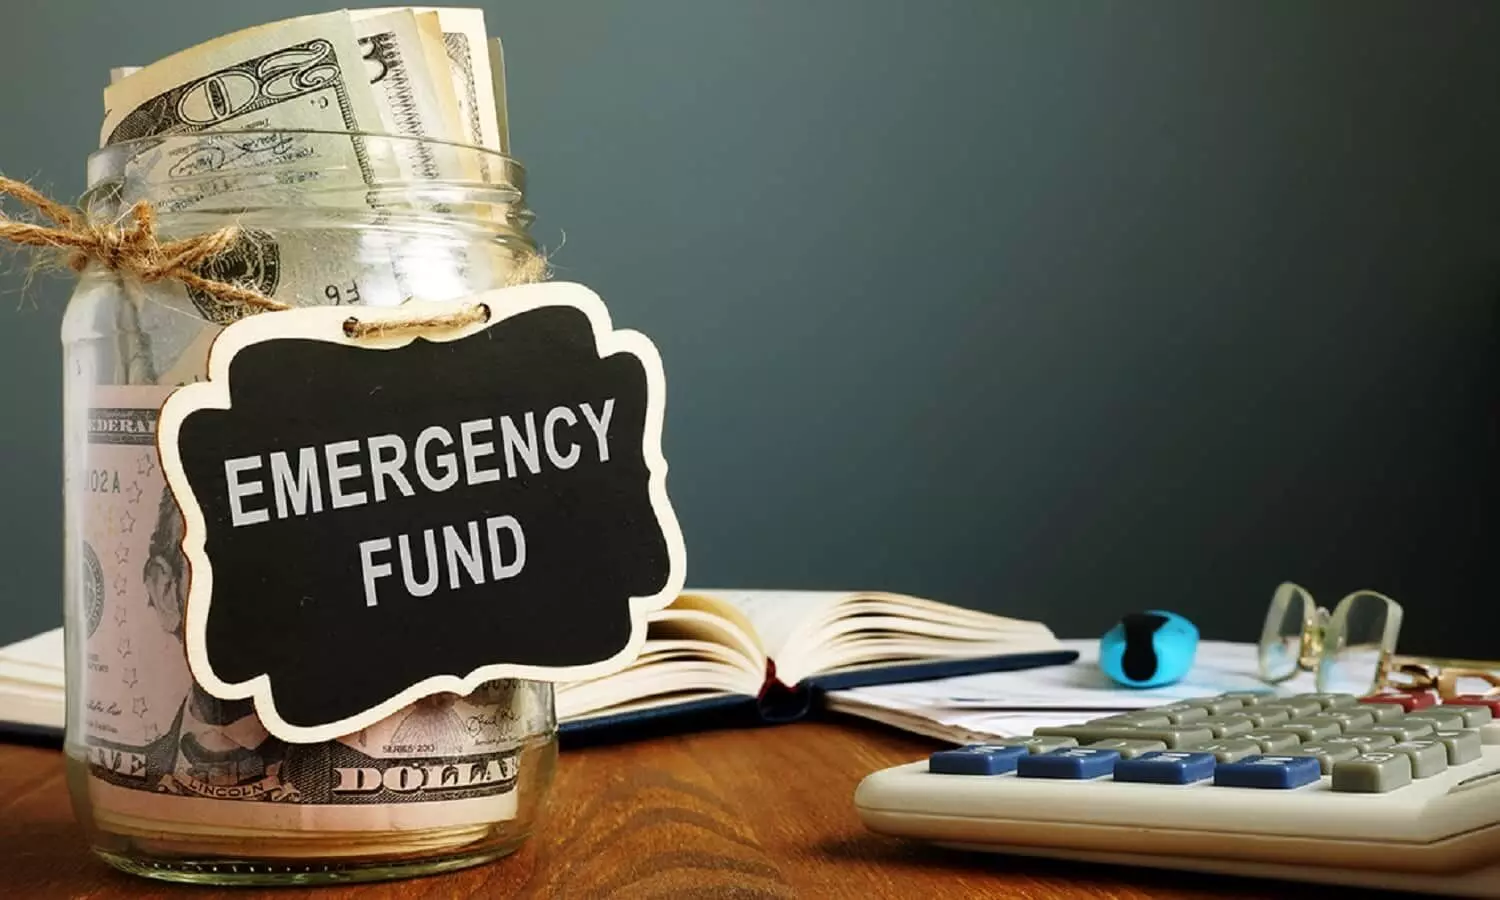 Make Emergency Fund: वित्तीय आपदा का सामना करने के लिए बनाएं इमरजेंसी फंड